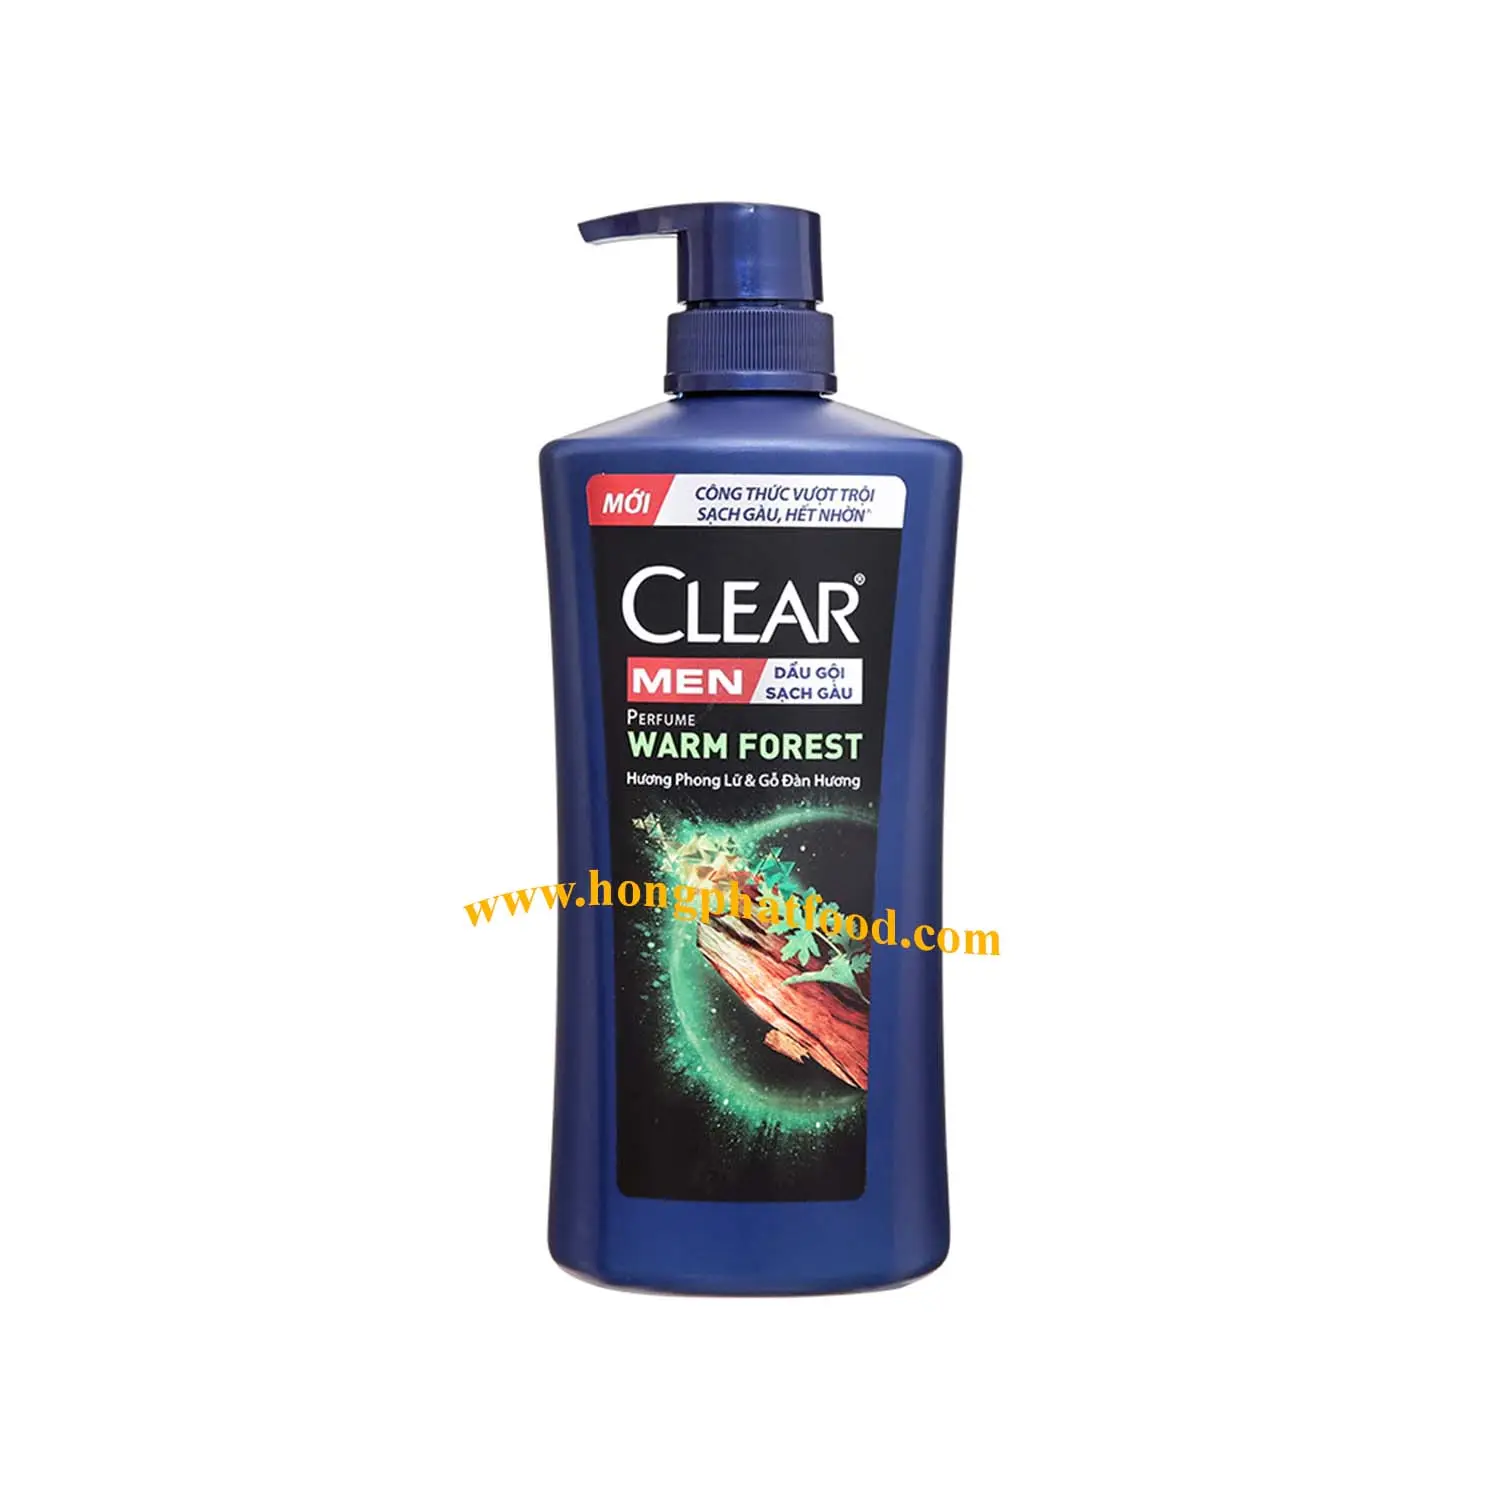 Champú y acondicionador para hombres de calidad premium-Champú para hombres Clearr 600g (bosque cálido)-Productos orgánicos para el cuidado del cabello precio barato